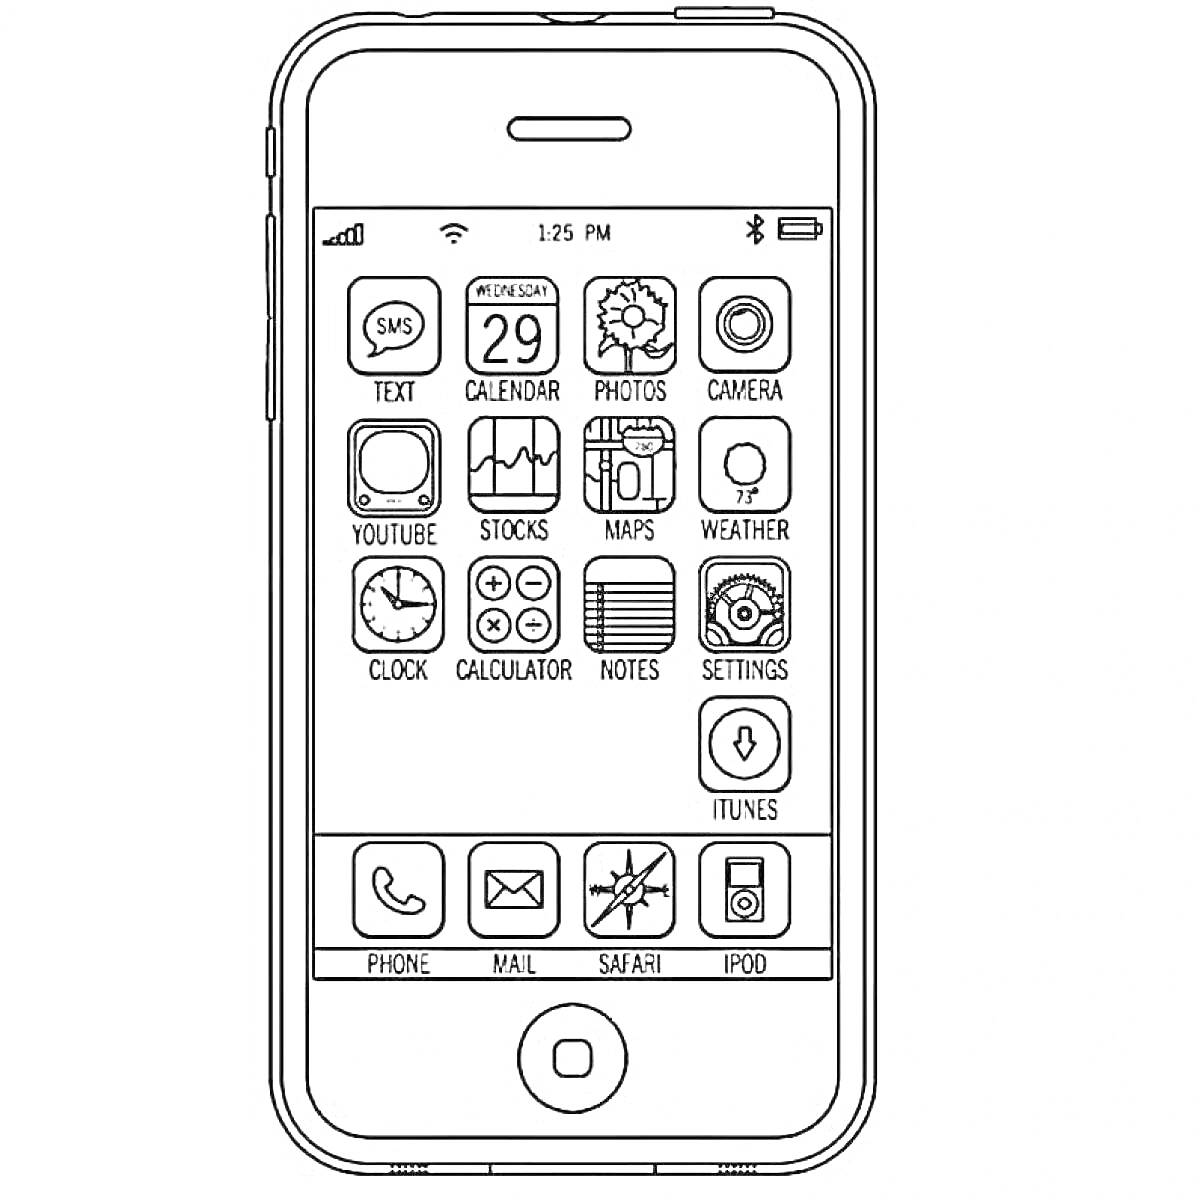 Раскраска Айфон 14 с иконками приложений, отображением времени и уровня заряда батареи